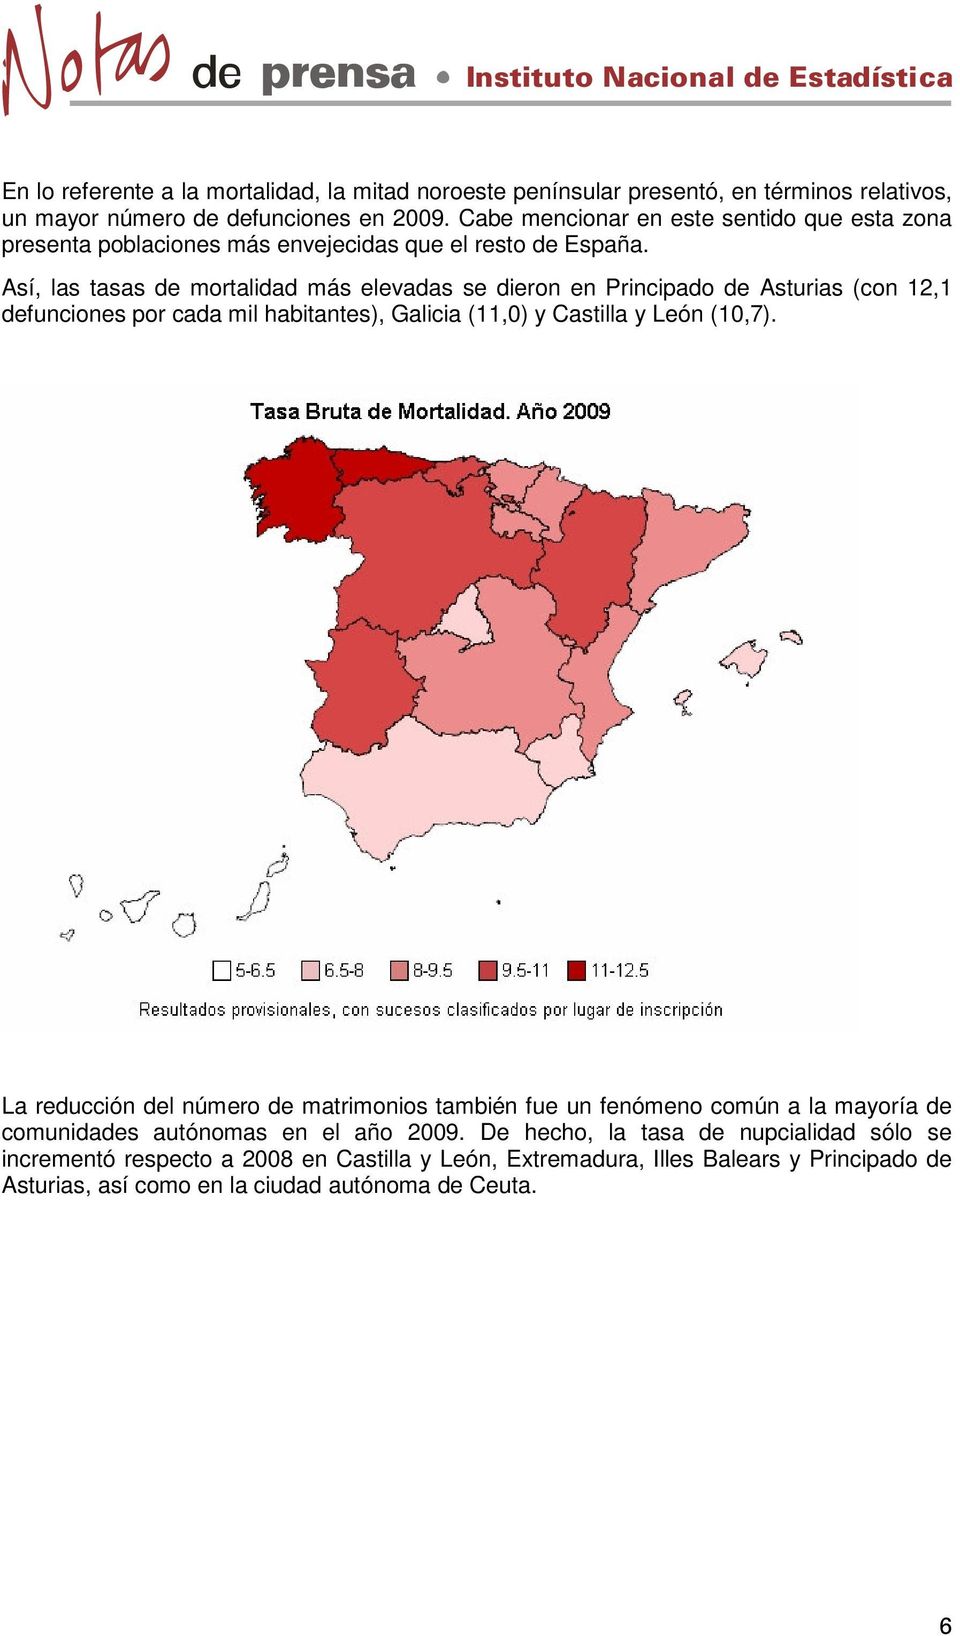 Así, las tasas de mortalidad más elevadas se dieron en Principado de Asturias (con 12,1 defunciones por cada mil habitantes), Galicia (11,0) y Castilla y León (10,7).